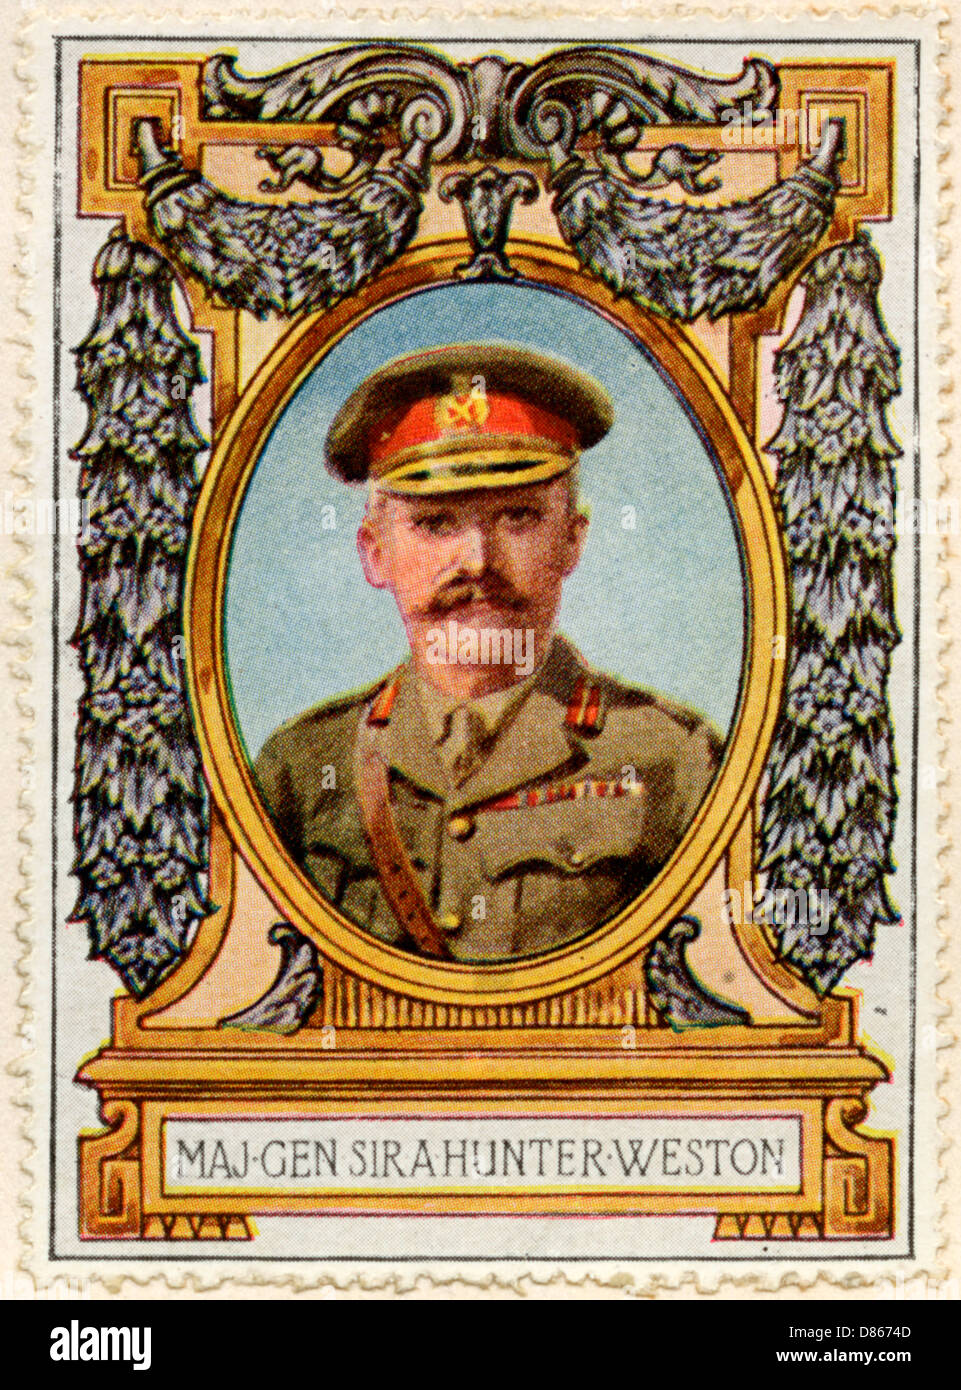 General Sir A. Hunter-Weston / Stamp Stockfoto